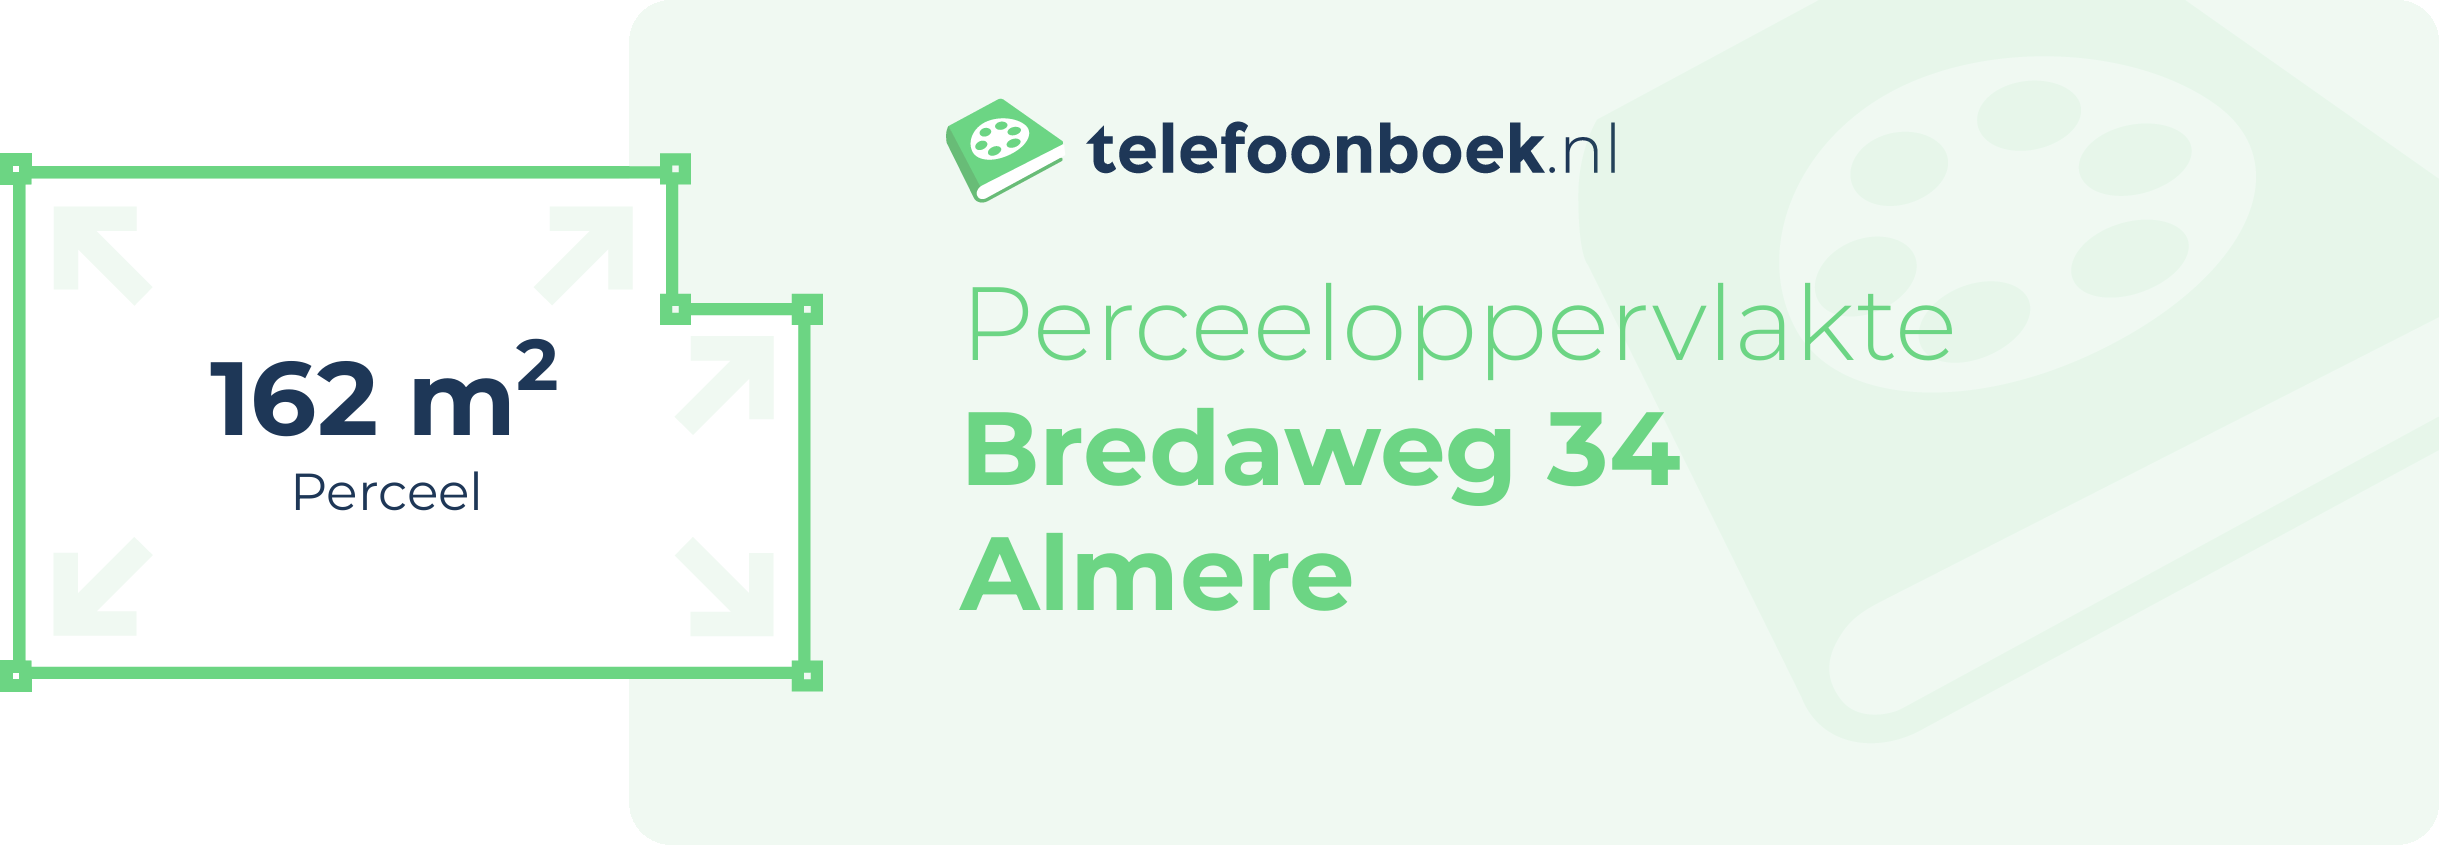 Perceeloppervlakte Bredaweg 34 Almere